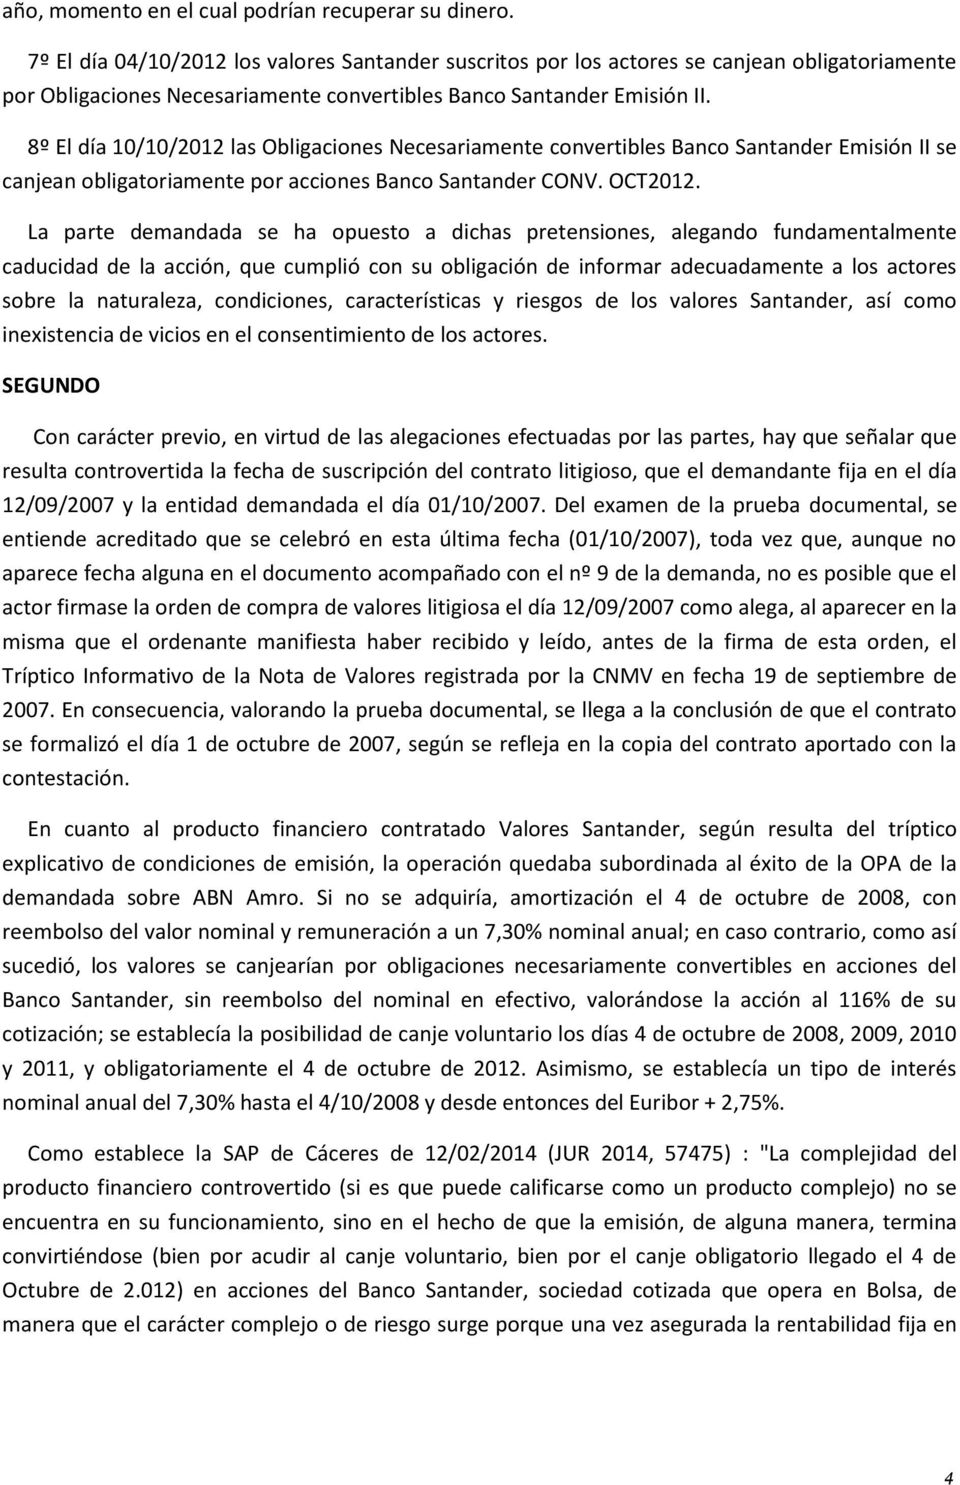 8º El día 10/10/2012 las Obligaciones Necesariamente convertibles Banco Santander Emisión II se canjean obligatoriamente por acciones Banco Santander CONV. OCT2012.